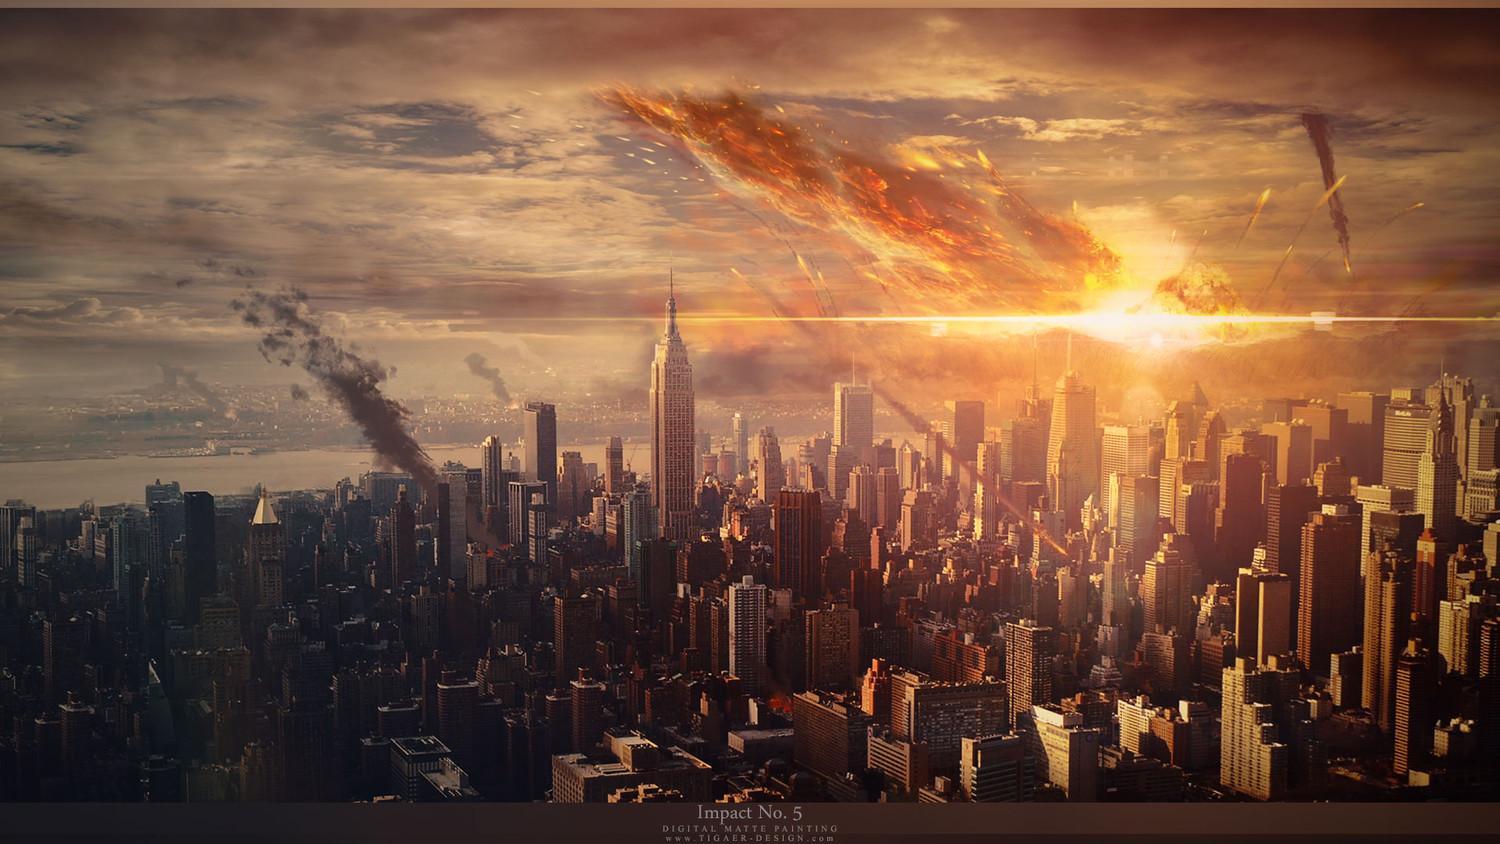 Апокалипсис может поглотить Землю на Пасху: почему астрологи прогнозируют конец света на 28 апреля - детали